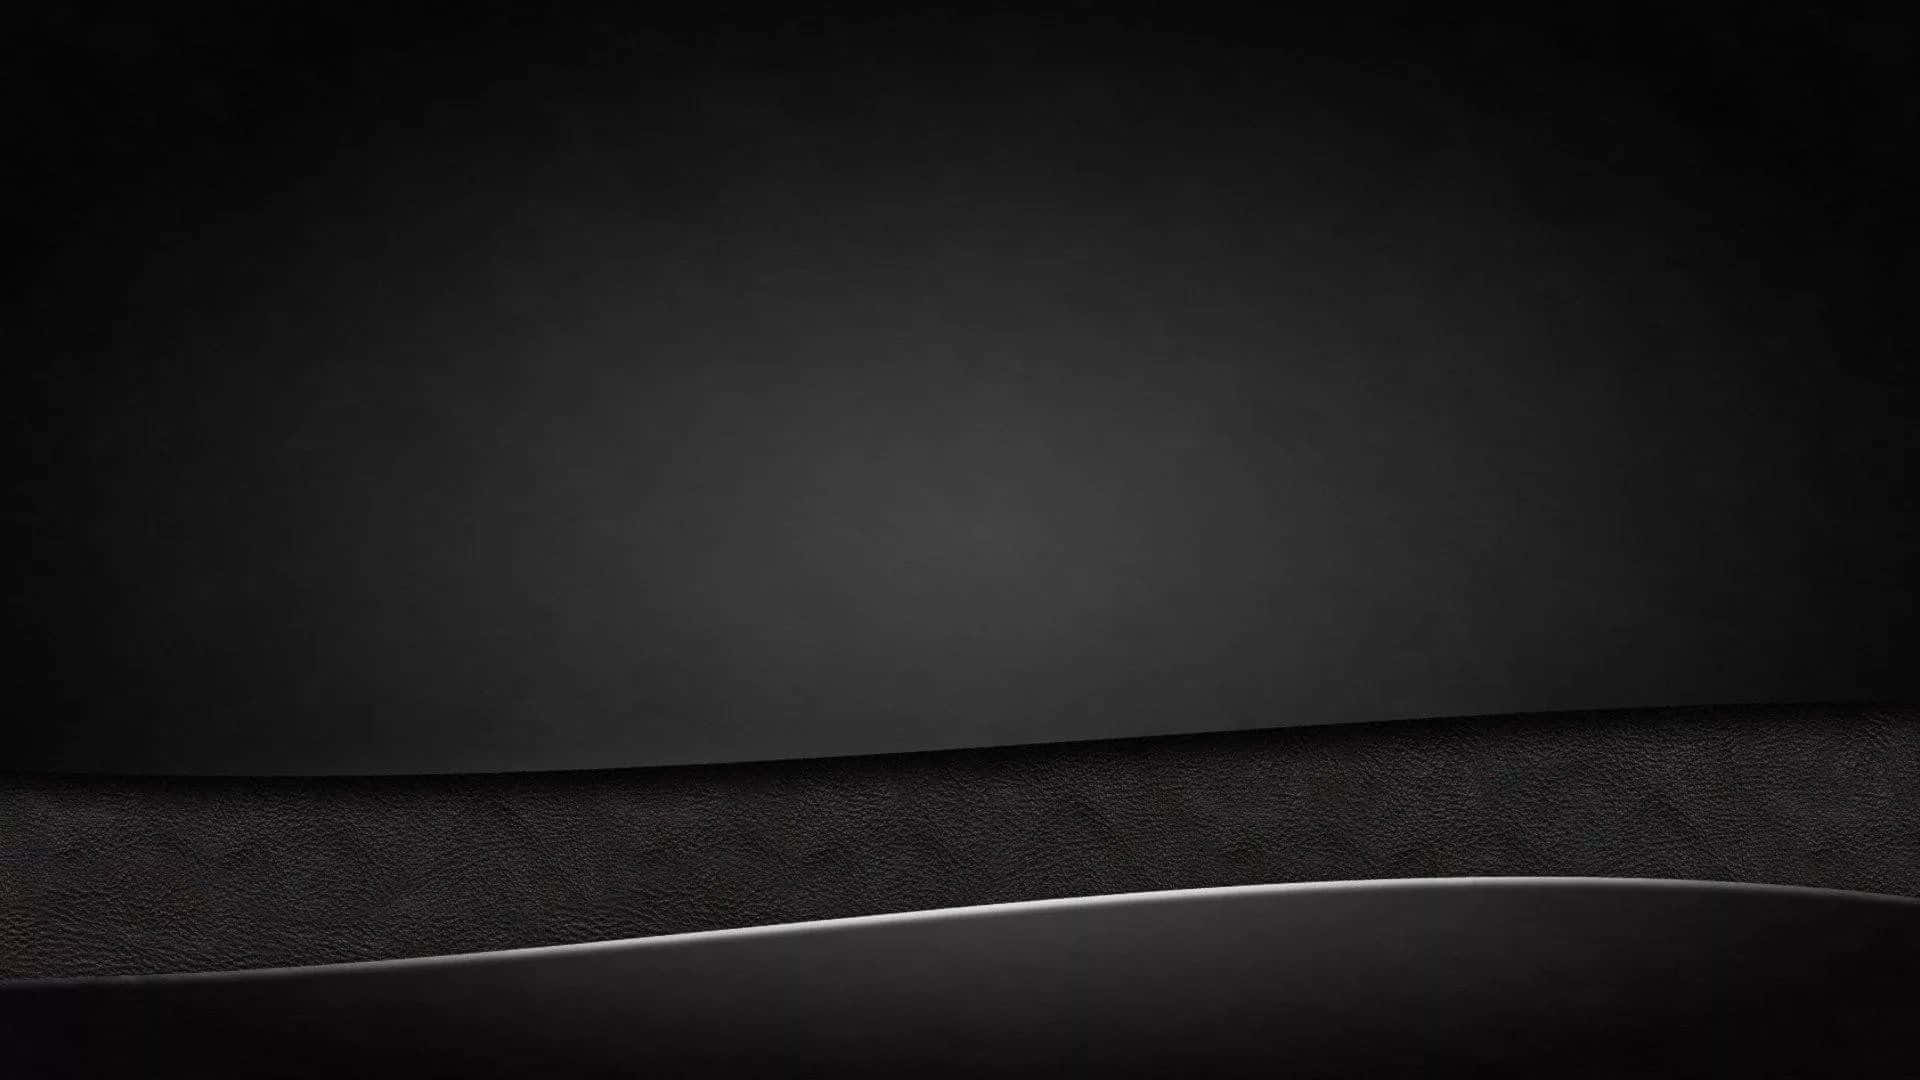 Plain Black Desktop With A Mountain Range Wallpaper